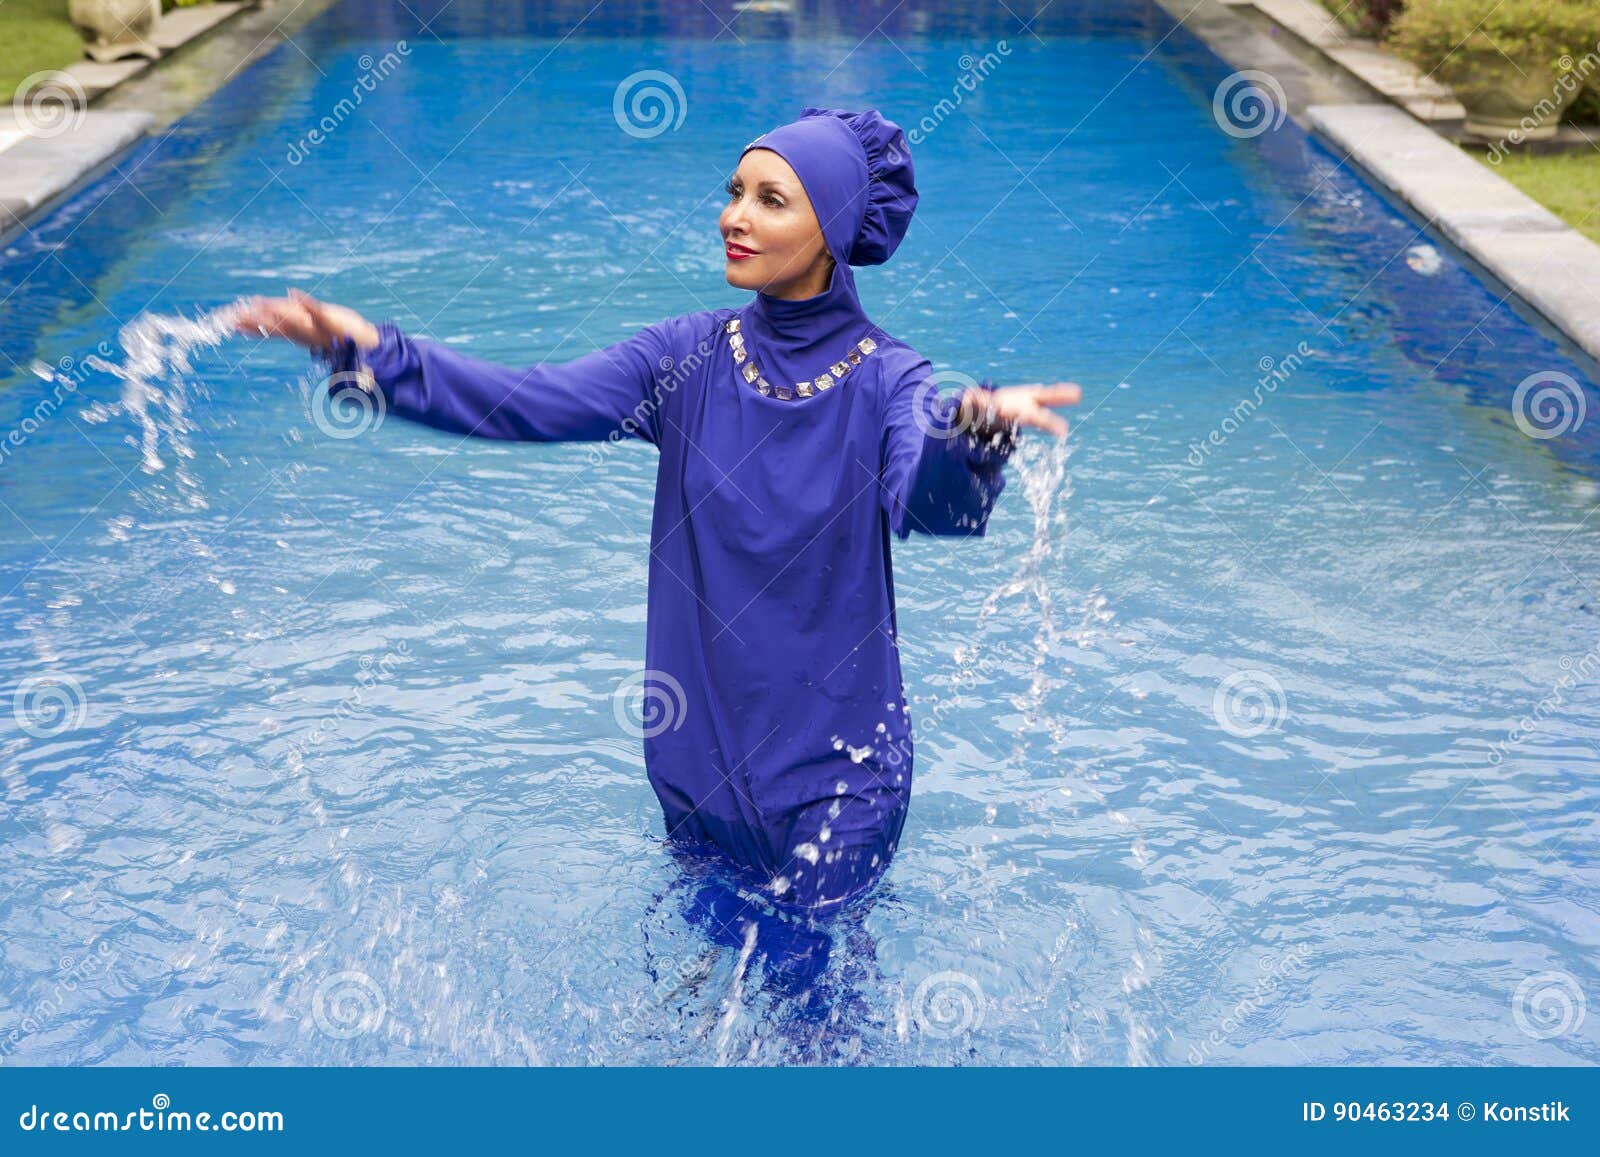 eternamente Tibio espalda La Mujer Atractiva En Un Burkini Musulmán Del Traje De Baño Salpica El Agua  En La Piscina Foto de archivo - Imagen de verano, halal: 90463234